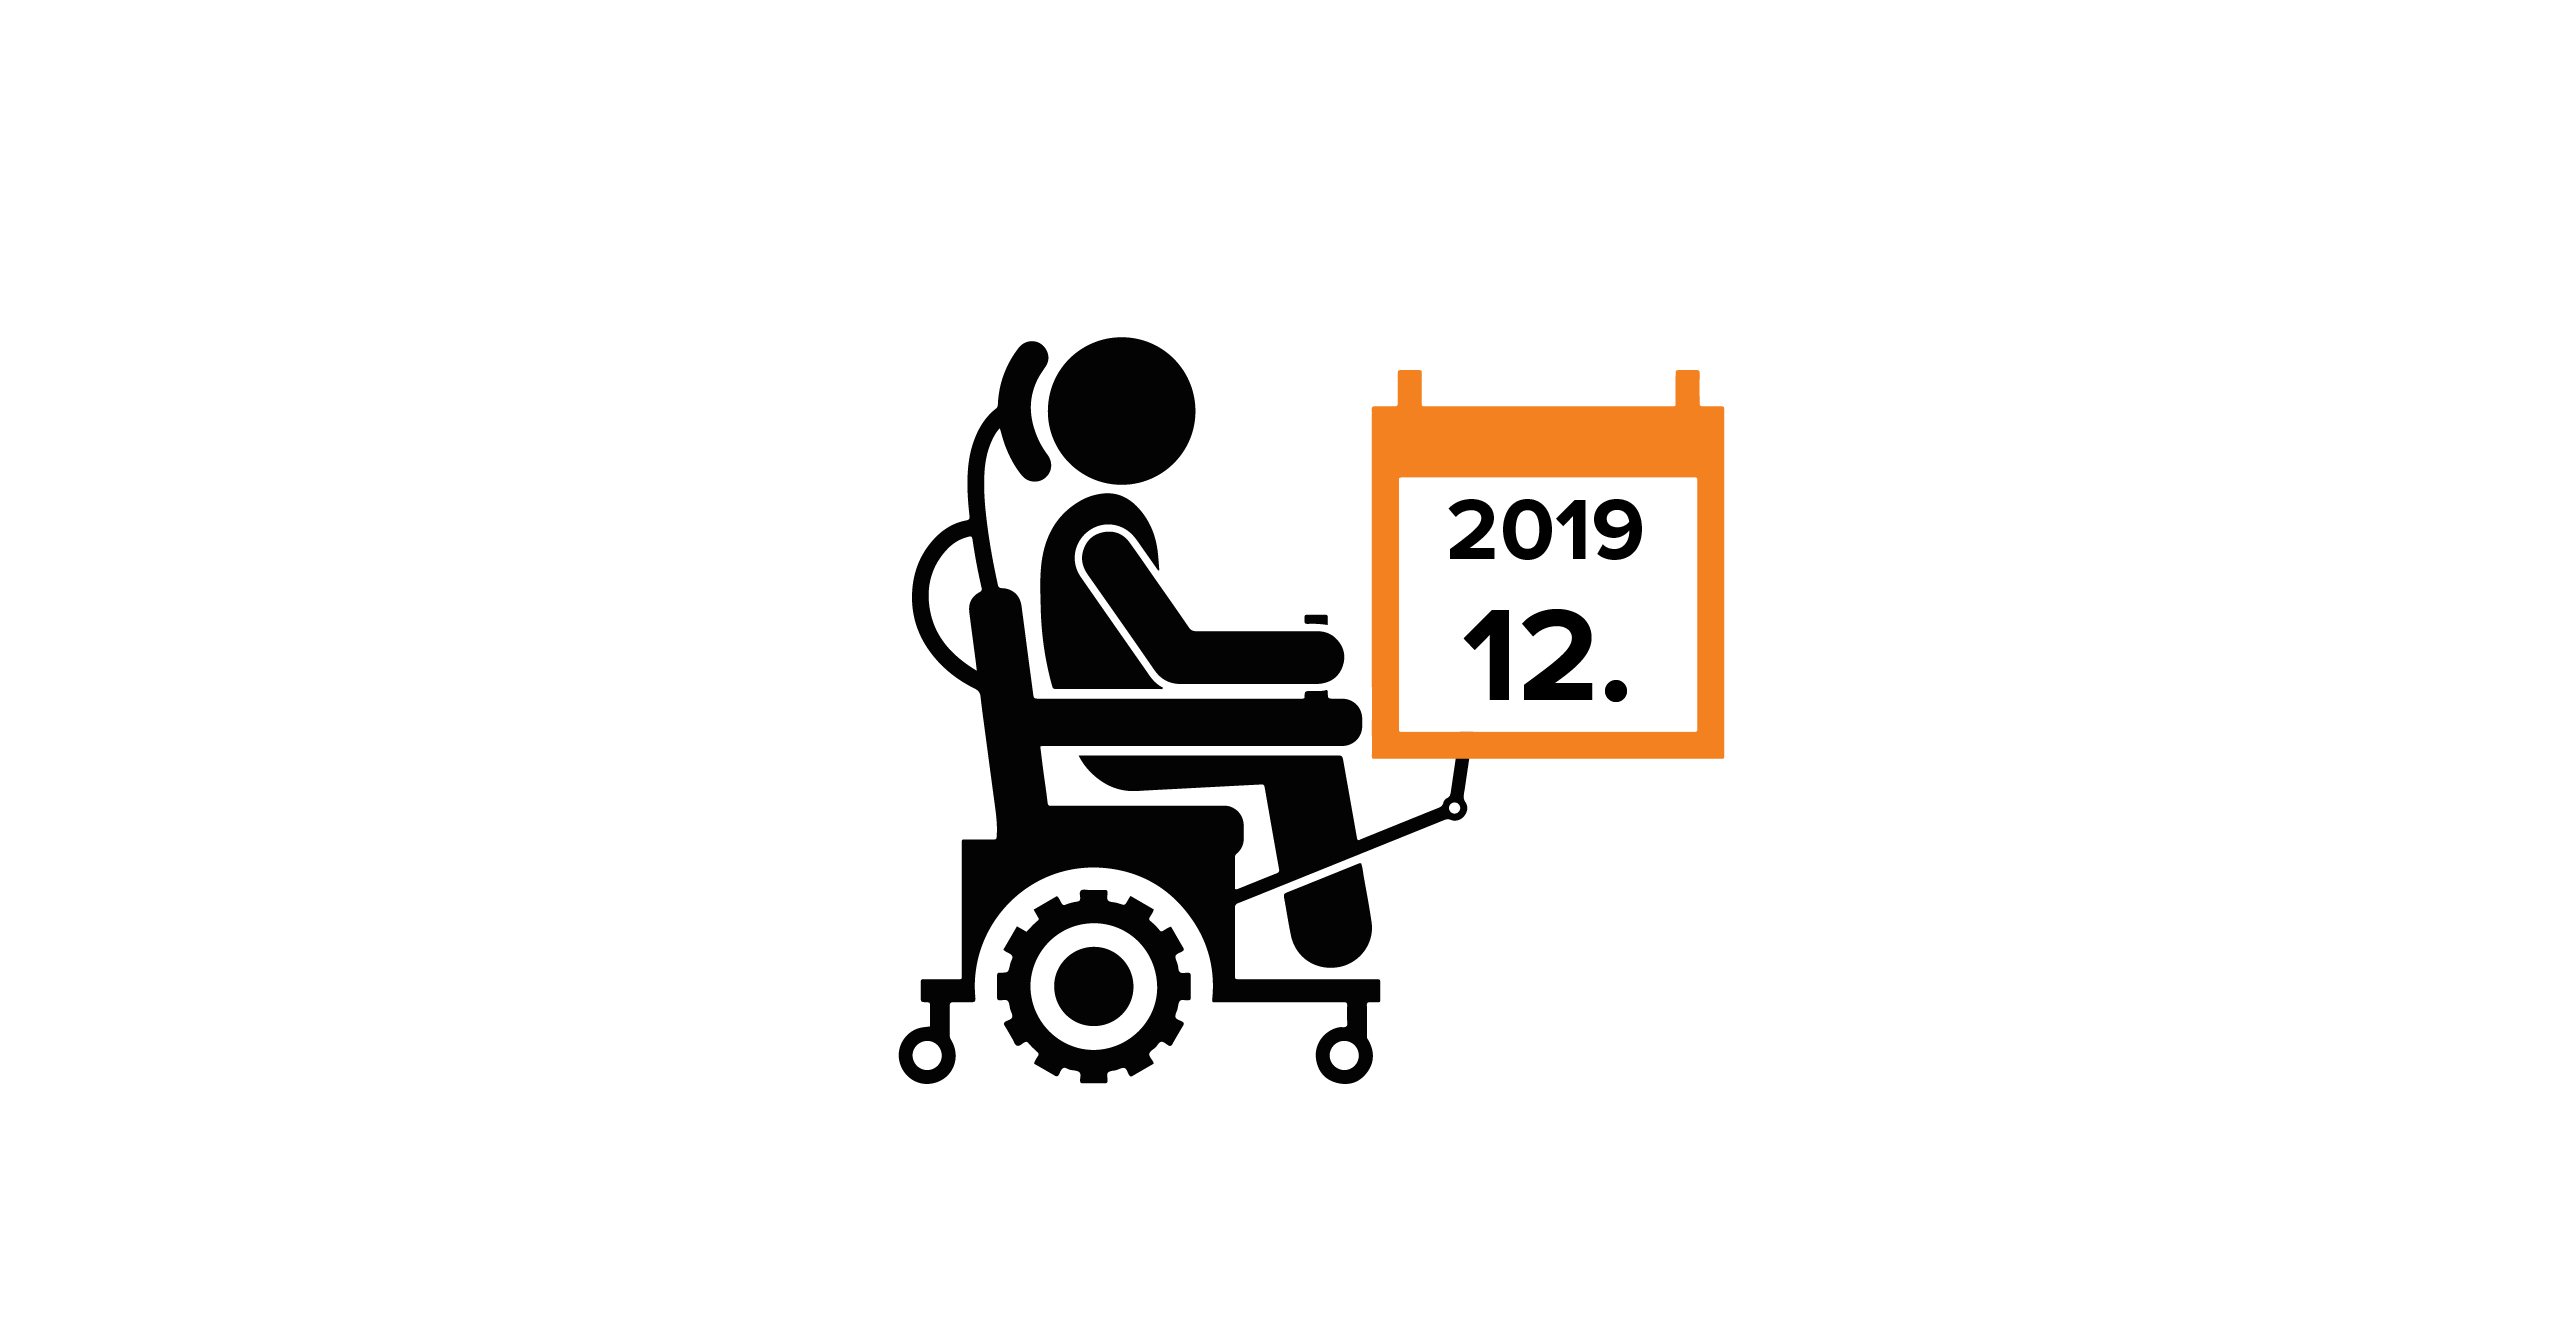 Na grafice człowiek na wózku, trzymający kalendarz z datą 12.2019